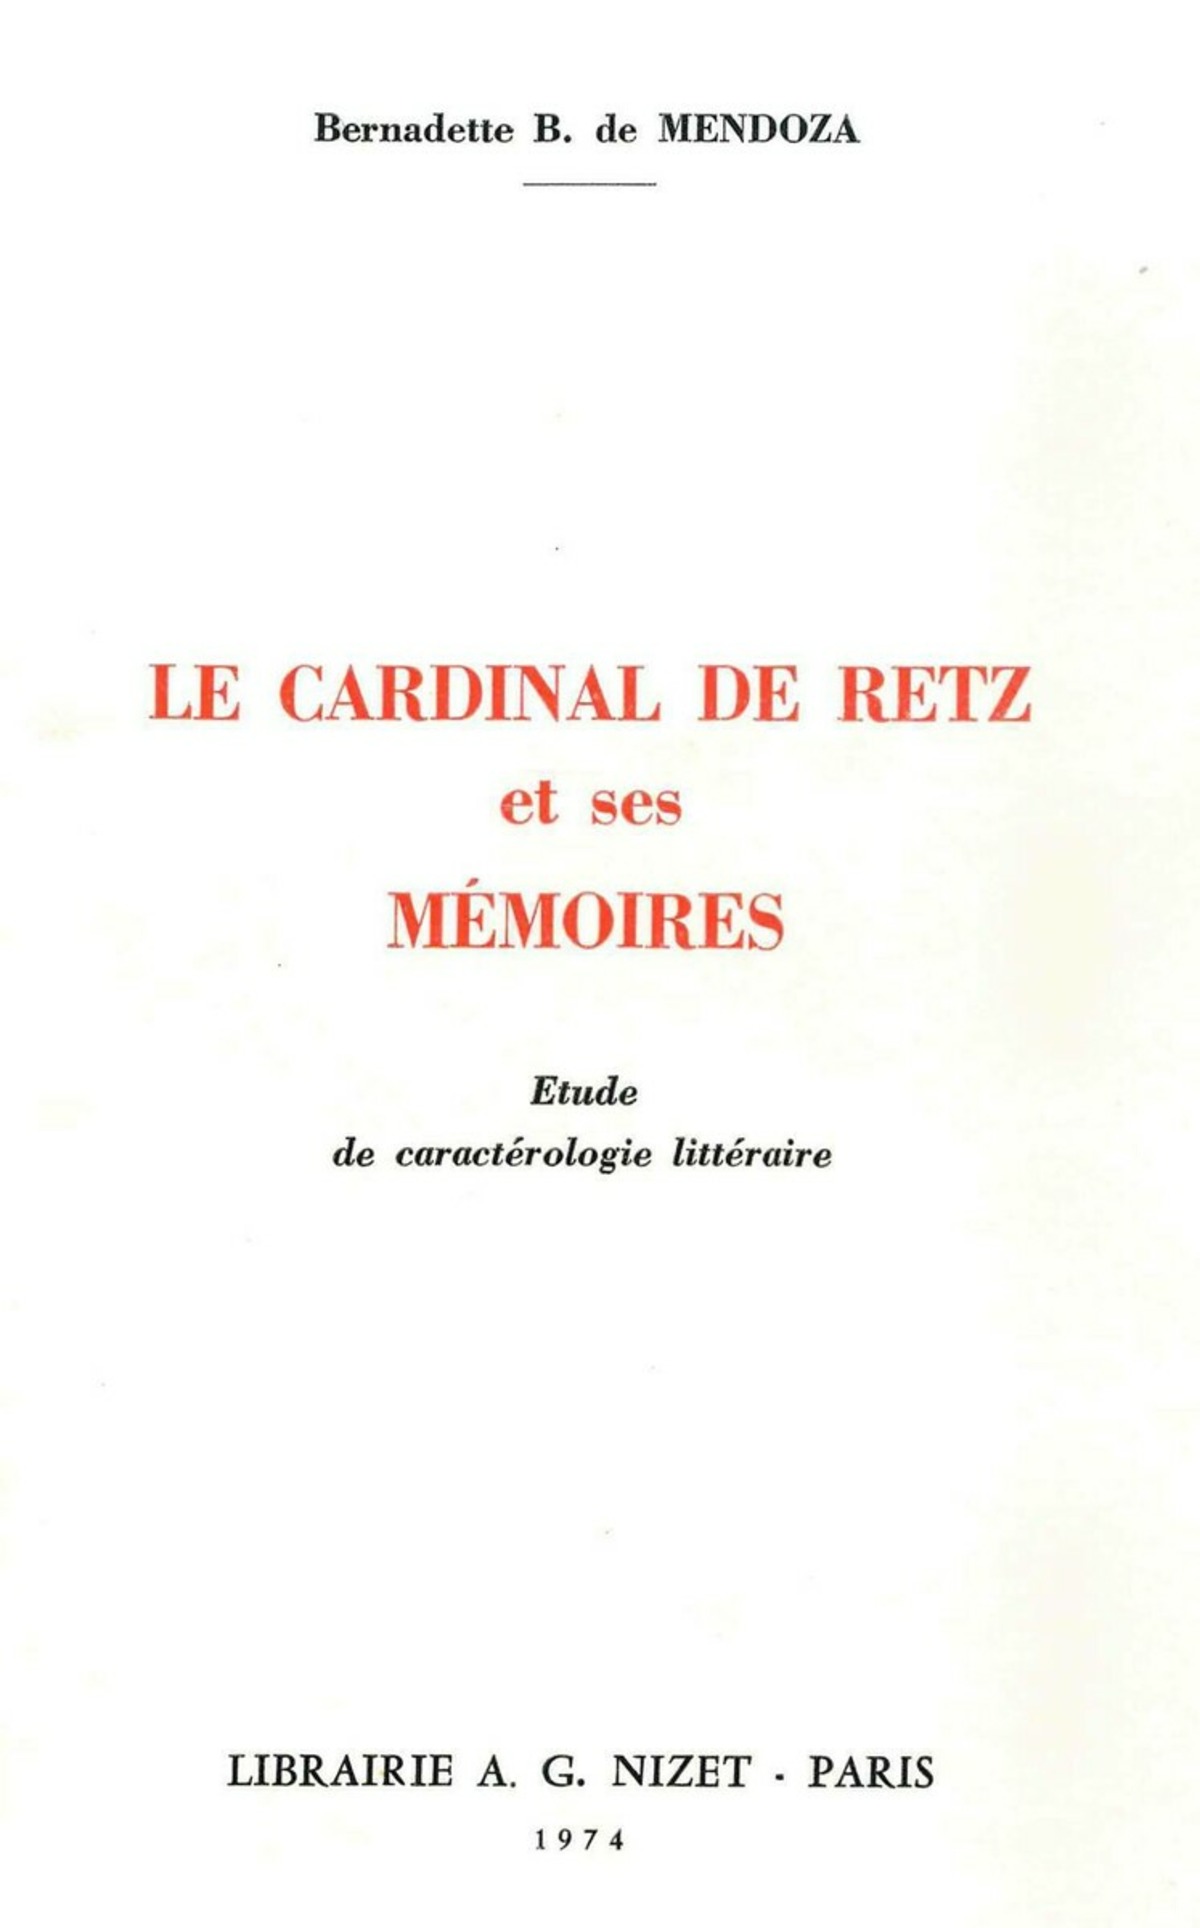 Le Cardinal de Retz et ses Mémoires